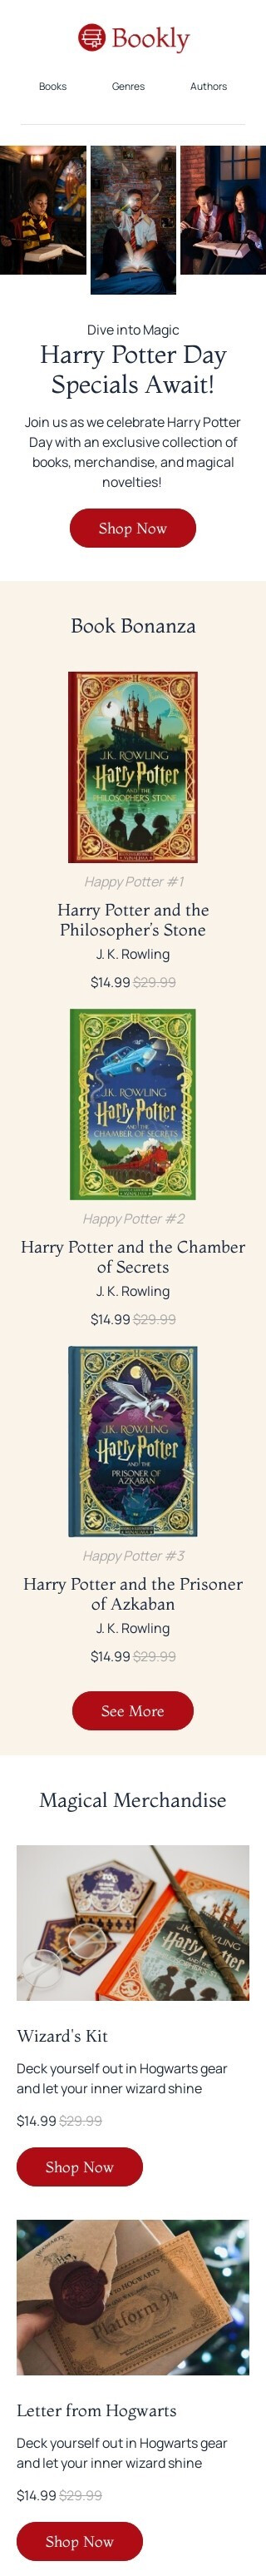 Шаблон письма к празднику День Гарри Поттера «Книжный бум» для индустрии «Книги, подарки, канцтовары» мобильный вид